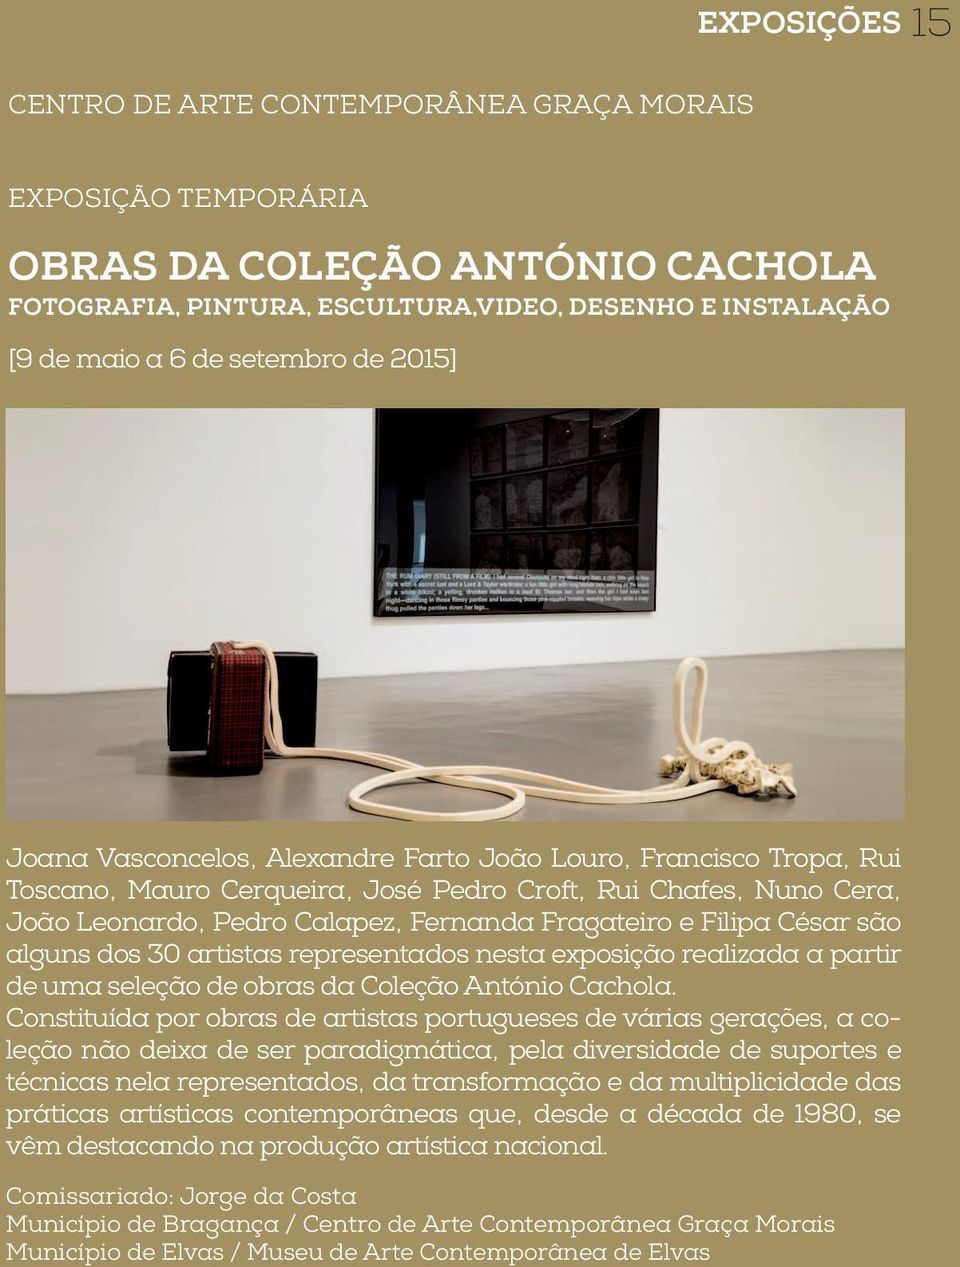 César são alguns dos 30 artistas representados nesta exposição realizada a partir de uma seleção de obras da Coleção António Cachola.